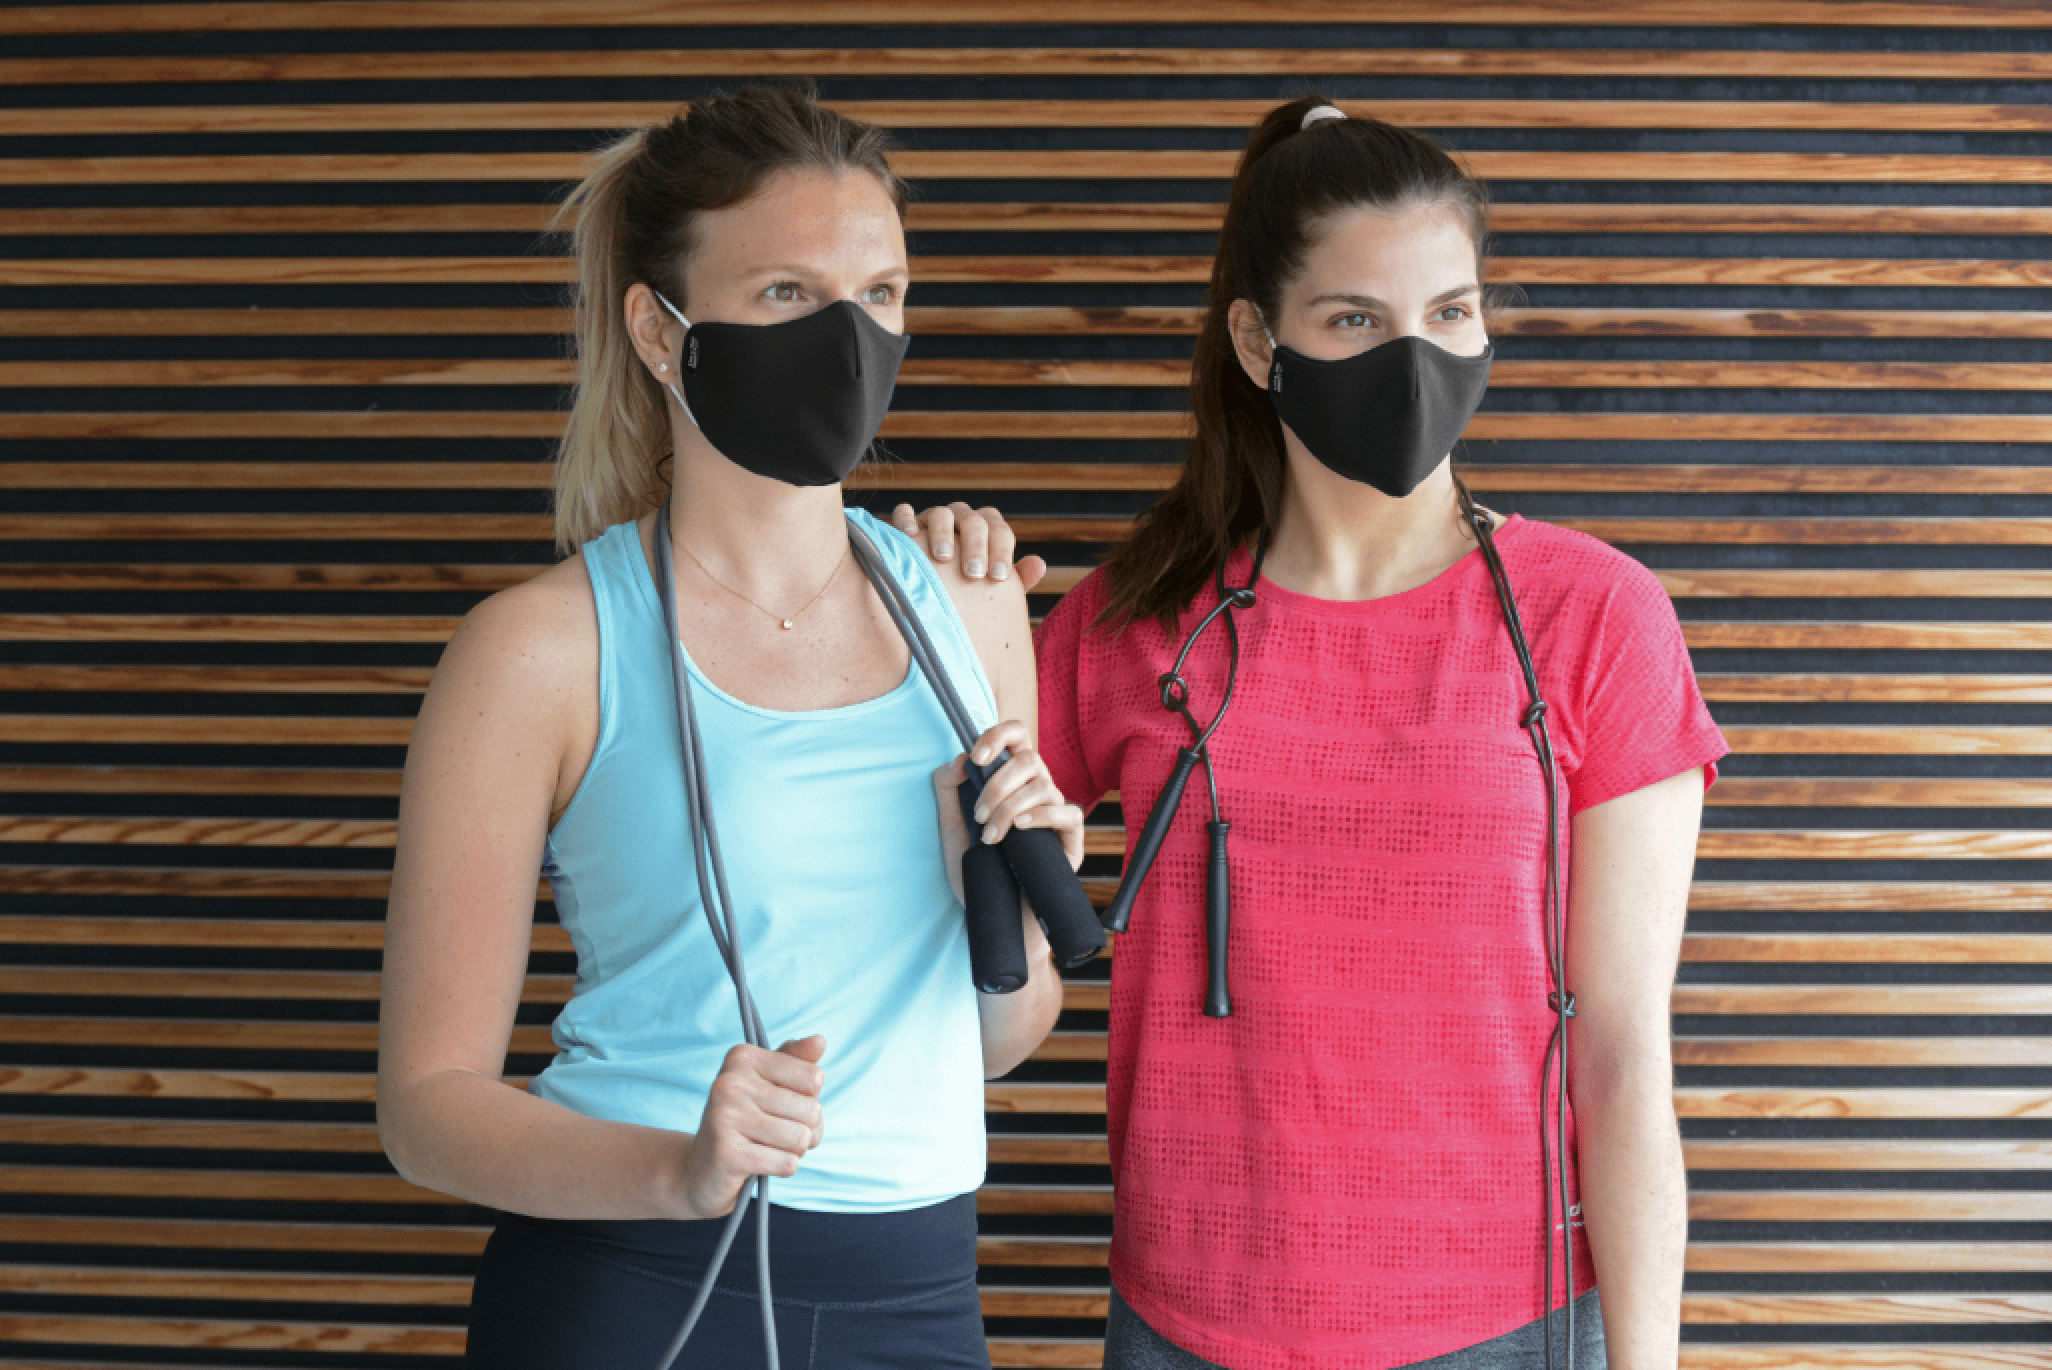 Masque biodégradable, sportif ou rechargeable… Cinq initiatives